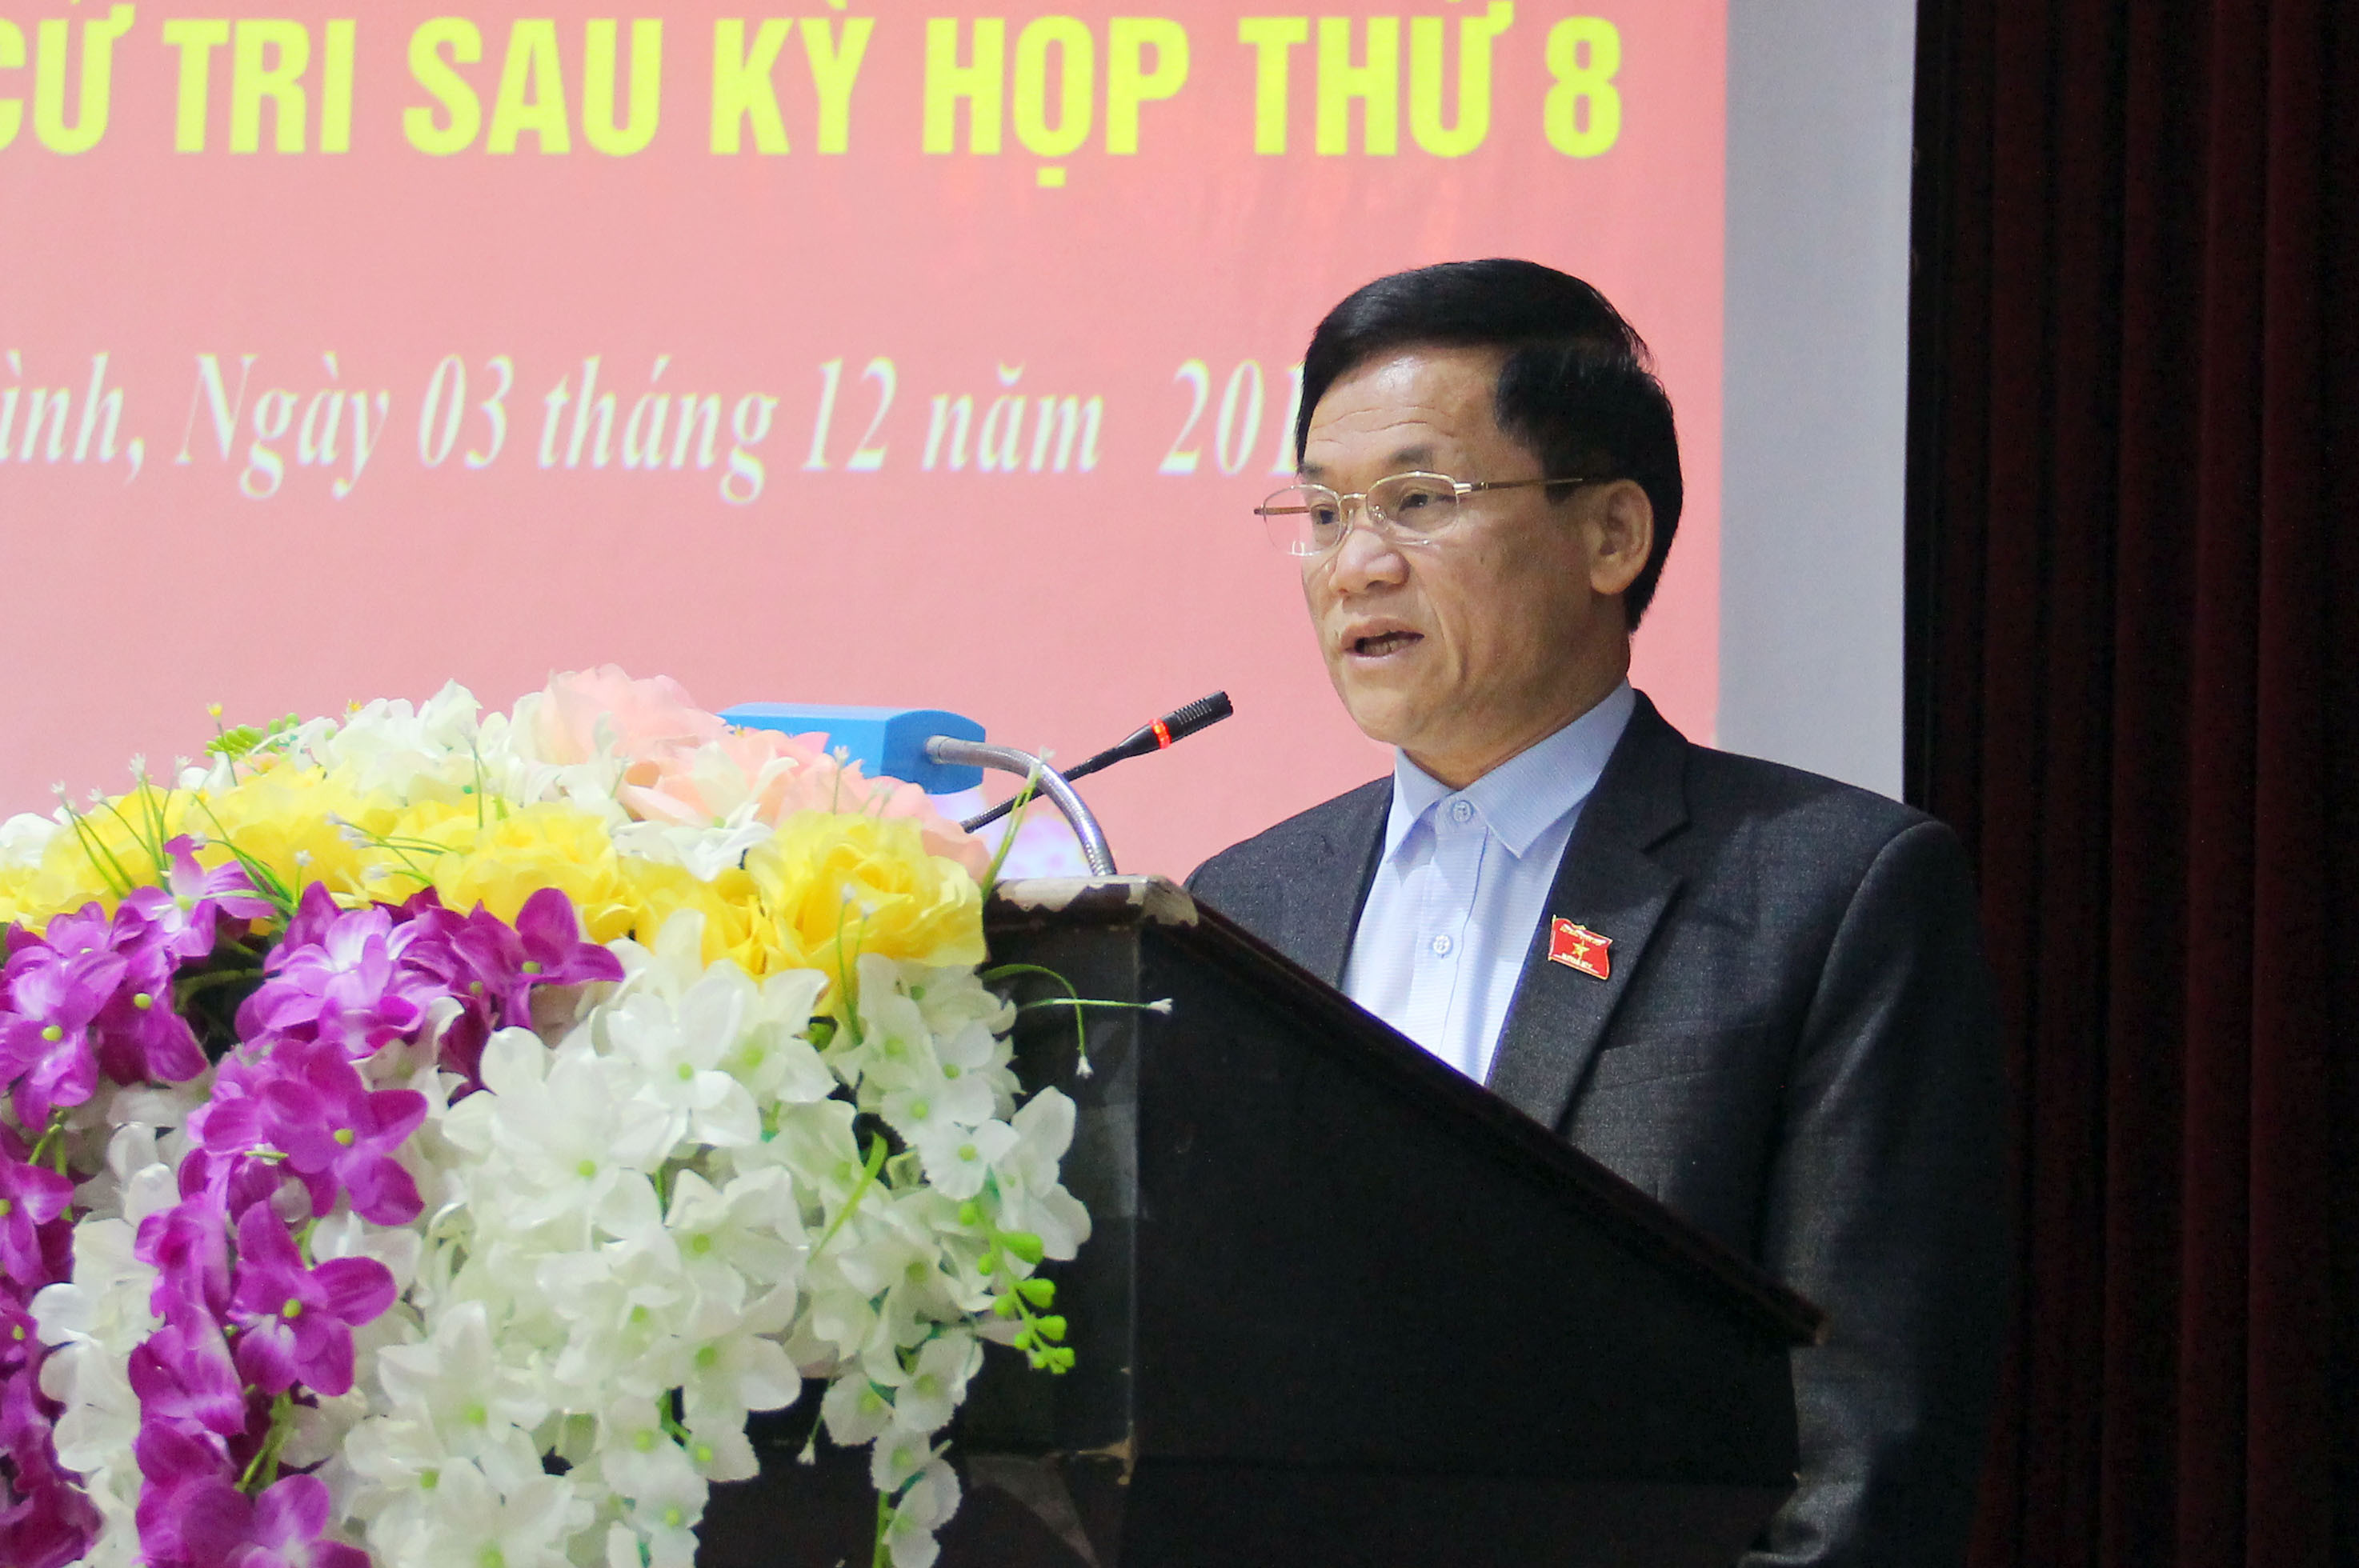 Phó trưởng Đoàn đại biểu Quốc hội tỉnh Trần Văn Mão trả lời kiến nghị của cư tri tại hội nghị. Ảnh: Thanh Quỳnh